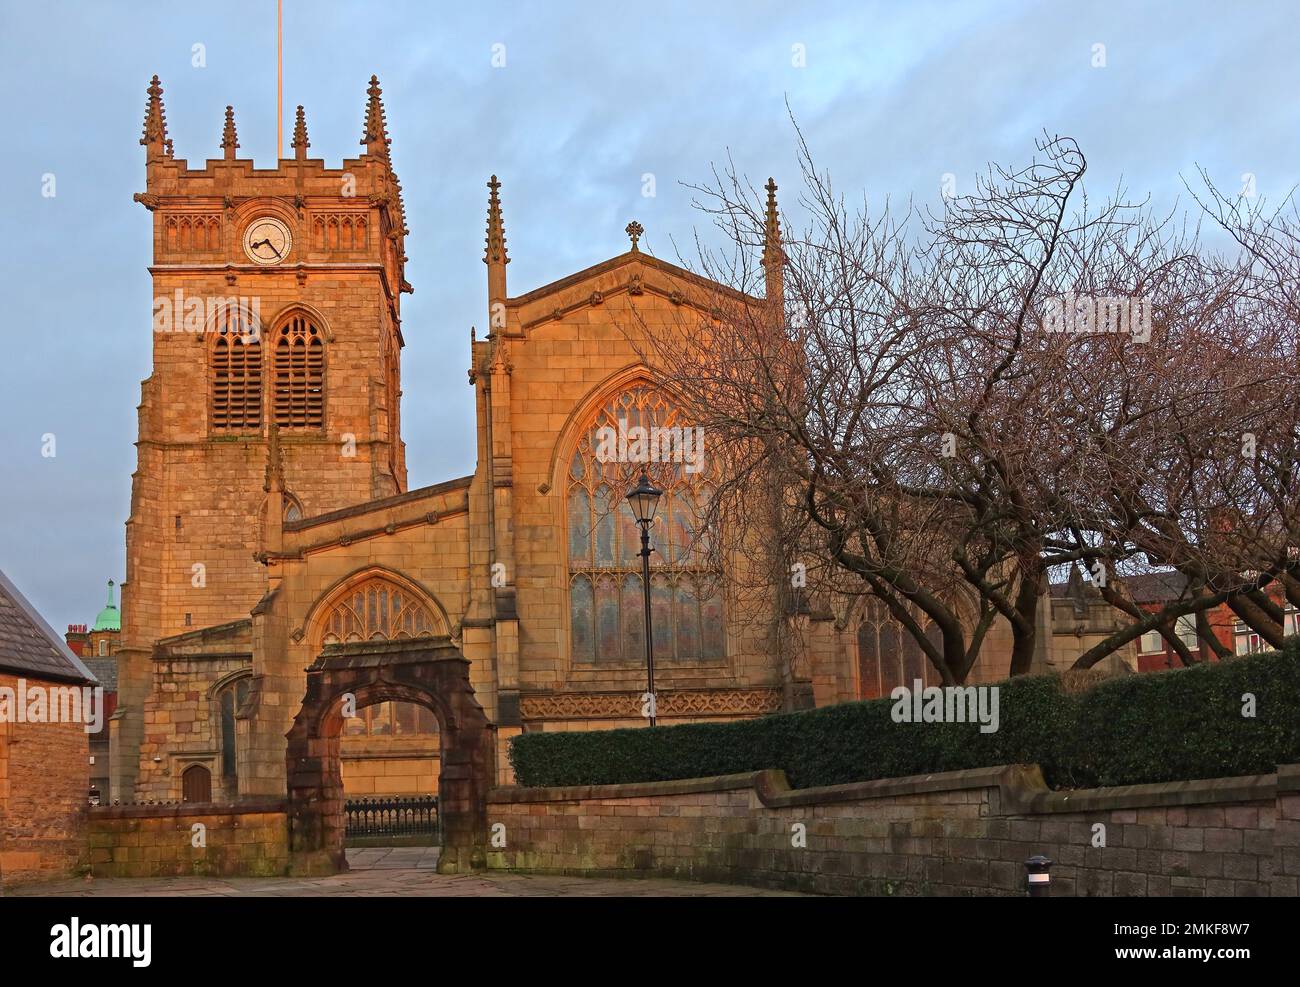 Église paroissiale All Saints, Bishopgate, coucher de soleil dans la soirée, Wigan, lancashire, Angleterre, Royaume-Uni, WN1 1NL Banque D'Images